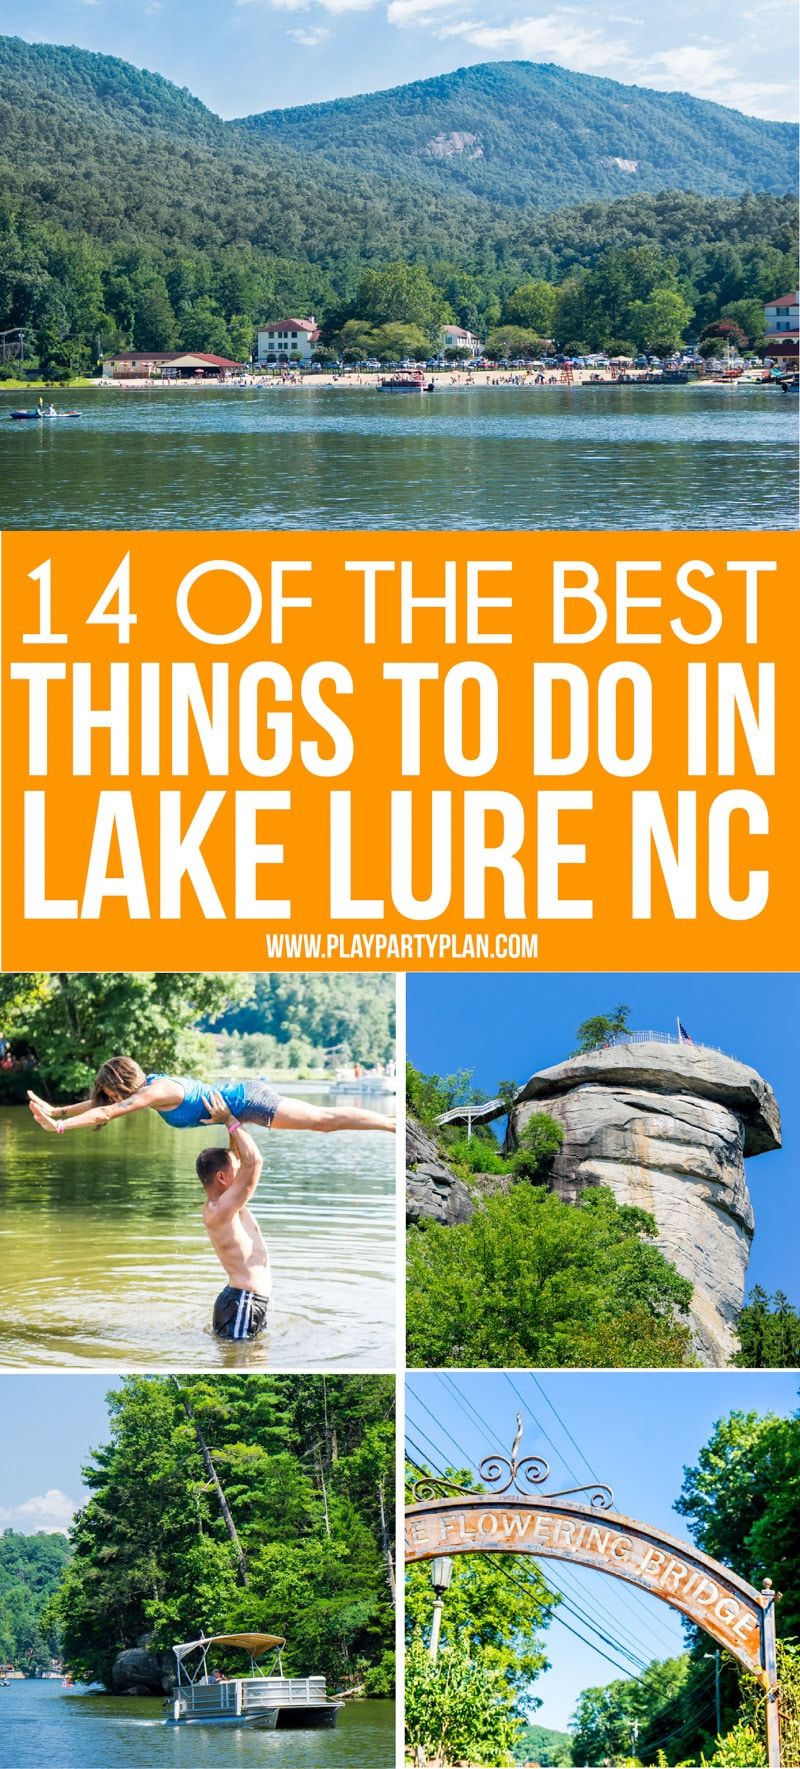 Una imagen de collage de cosas que hacer en Lake Lure NC